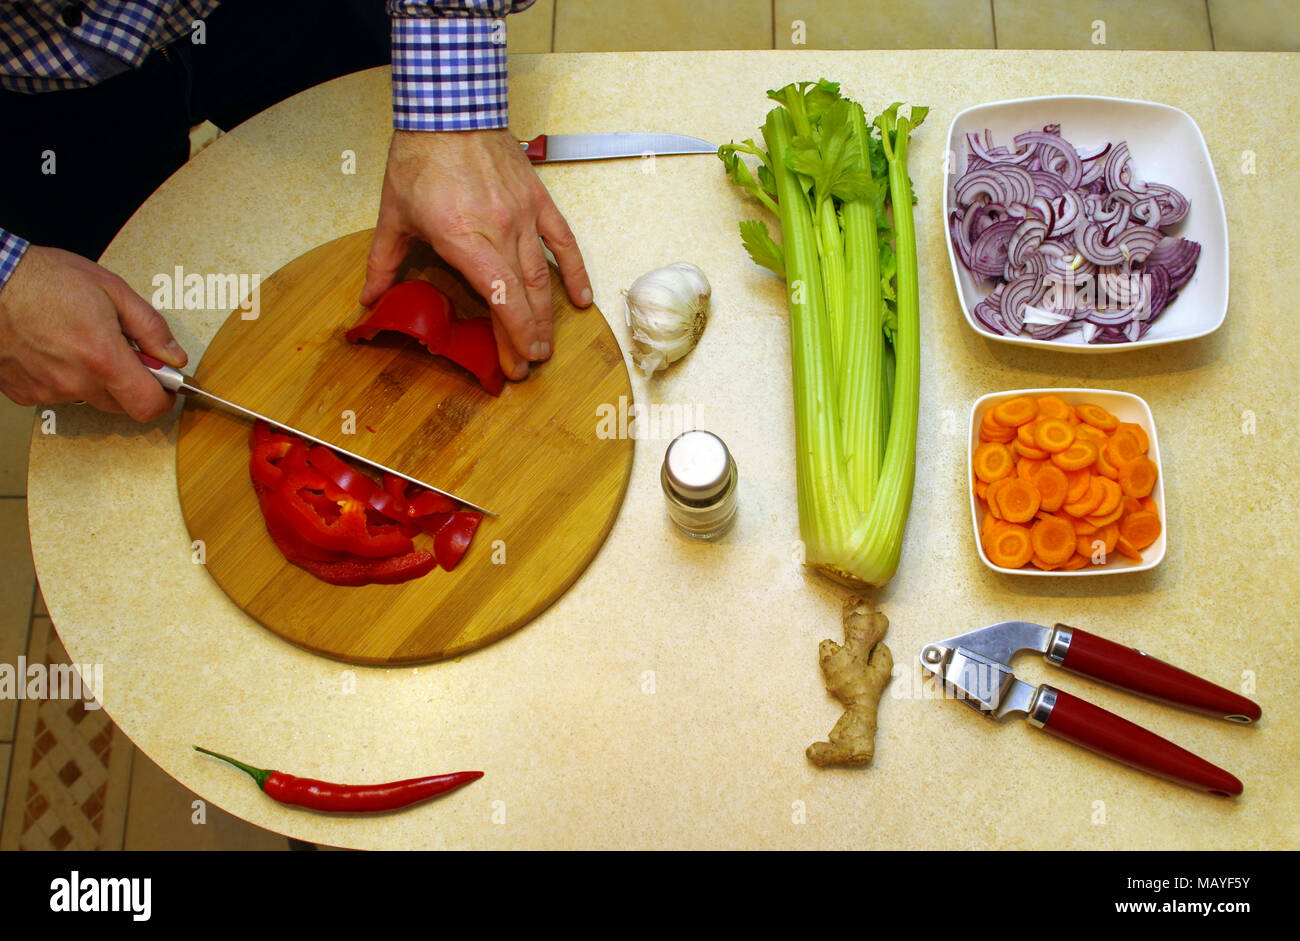 La coupe et la préparation des aliments végétariens par l'homme. Vue du haut conseil pour la nutrition végétale. Banque D'Images